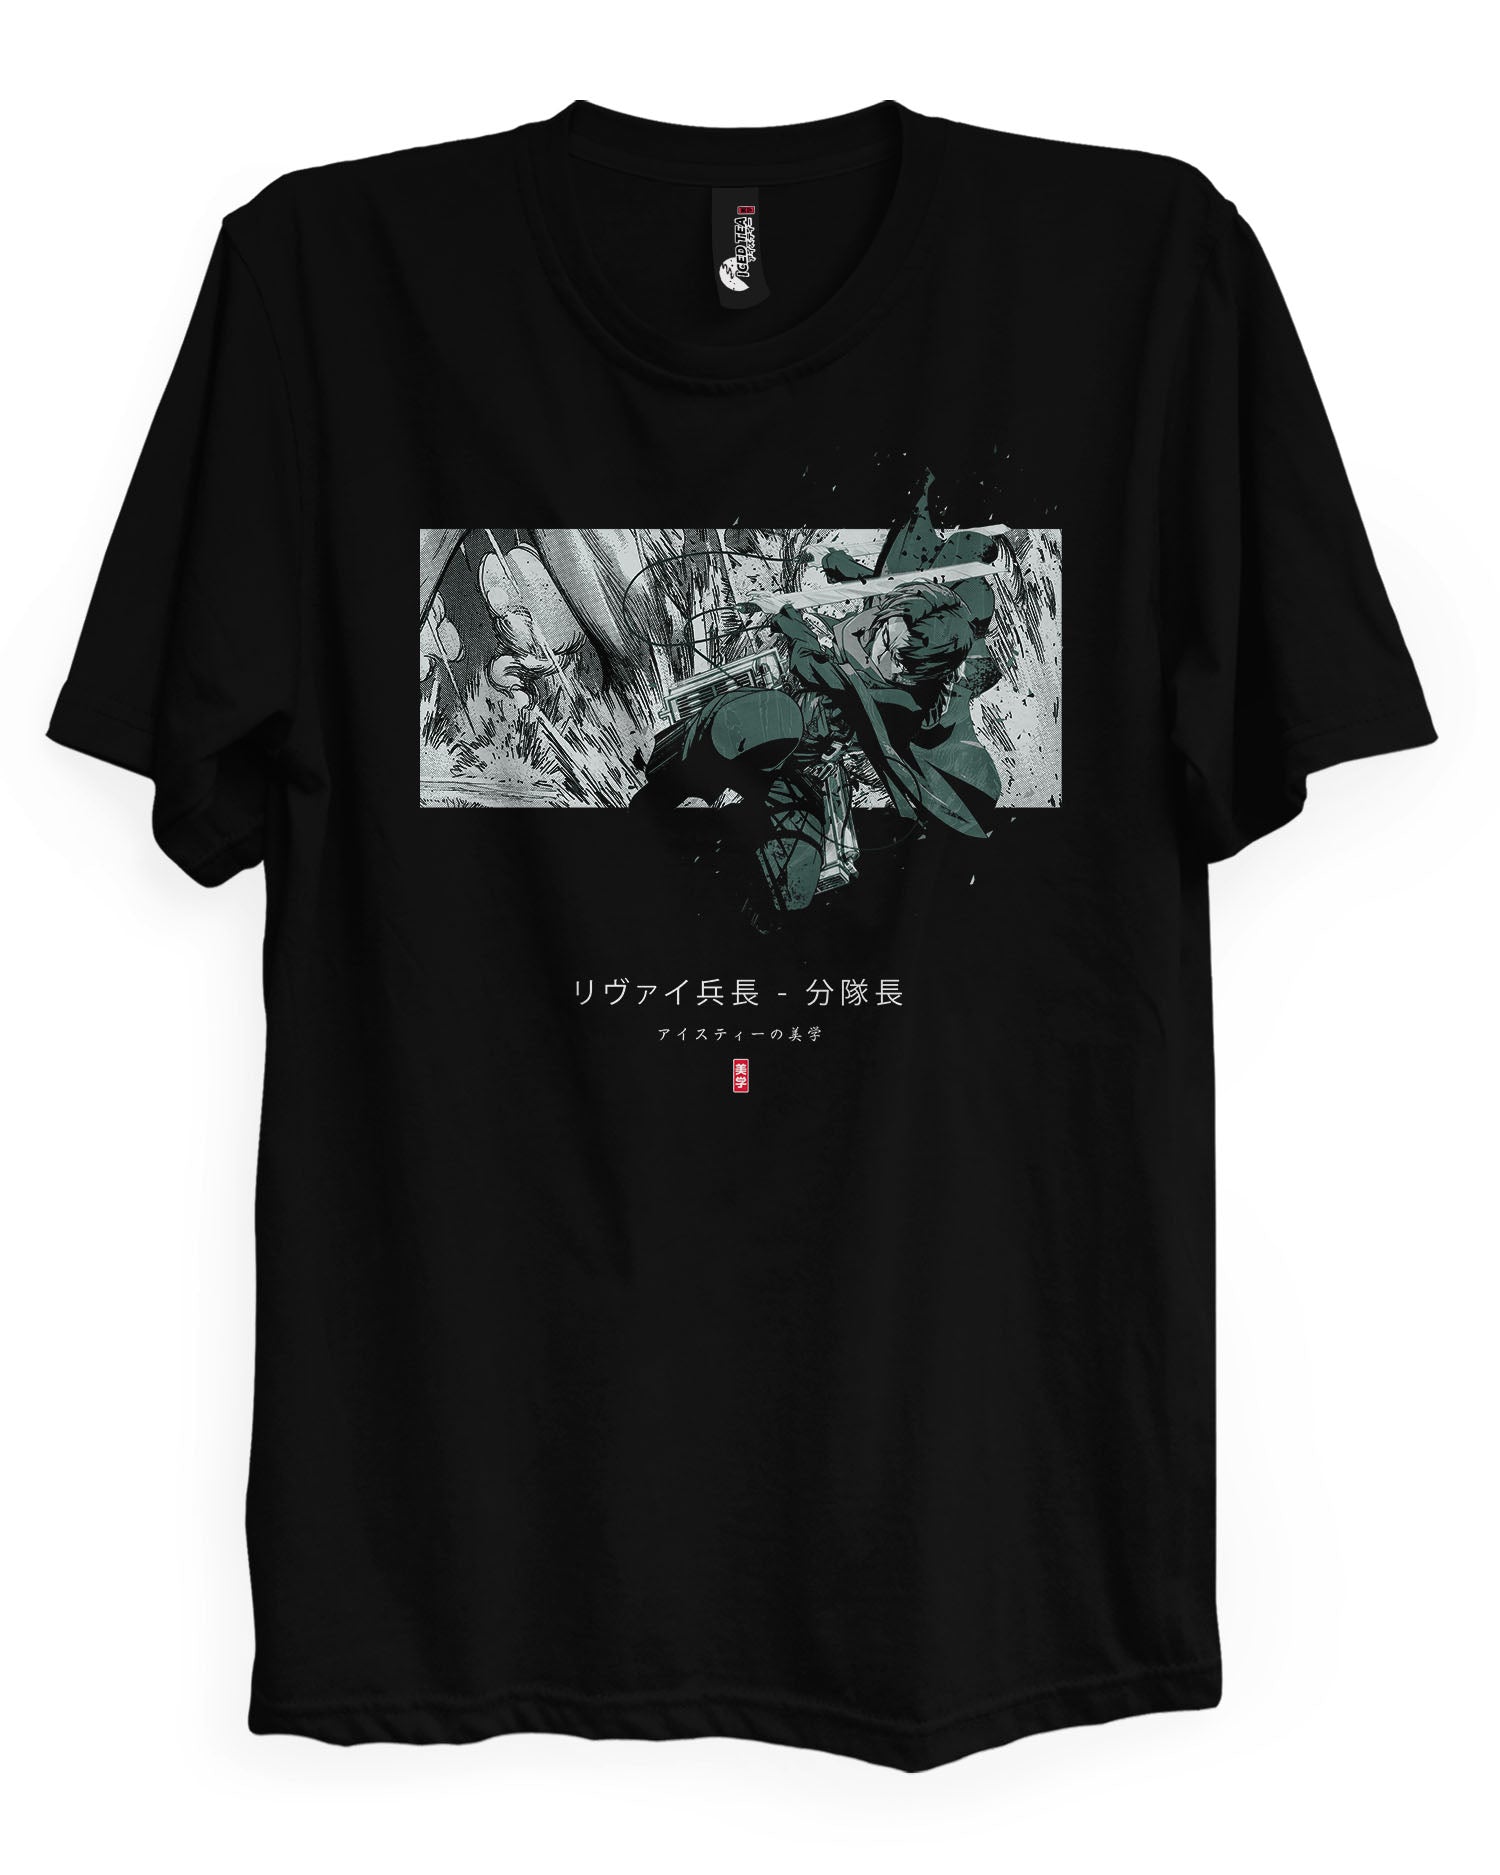 LEVI (SQUAD CAPTAIN) - T-Shirt